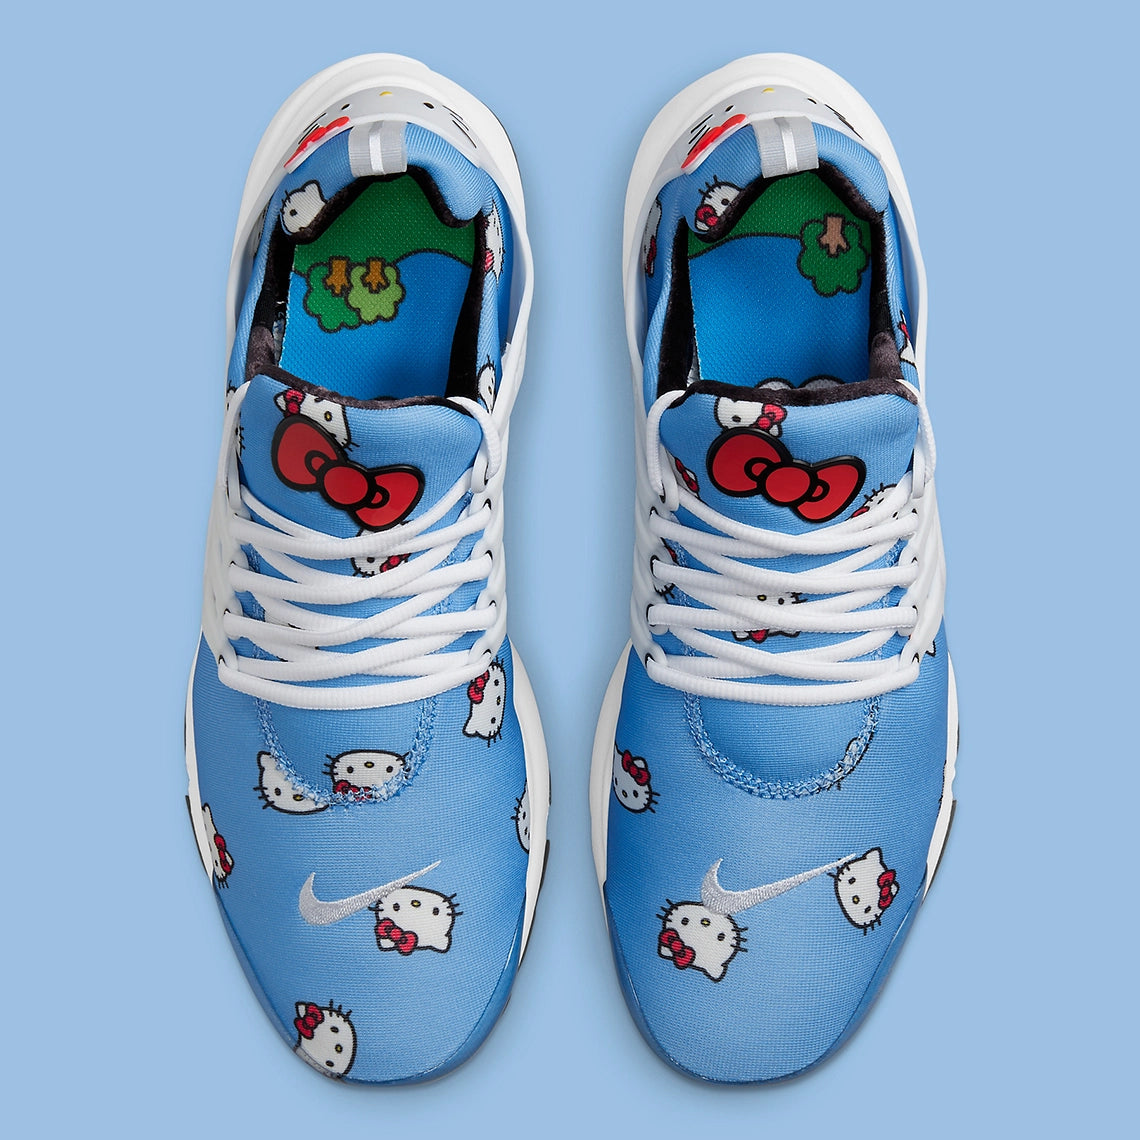 Nike Air Presto "Hello Kitty"